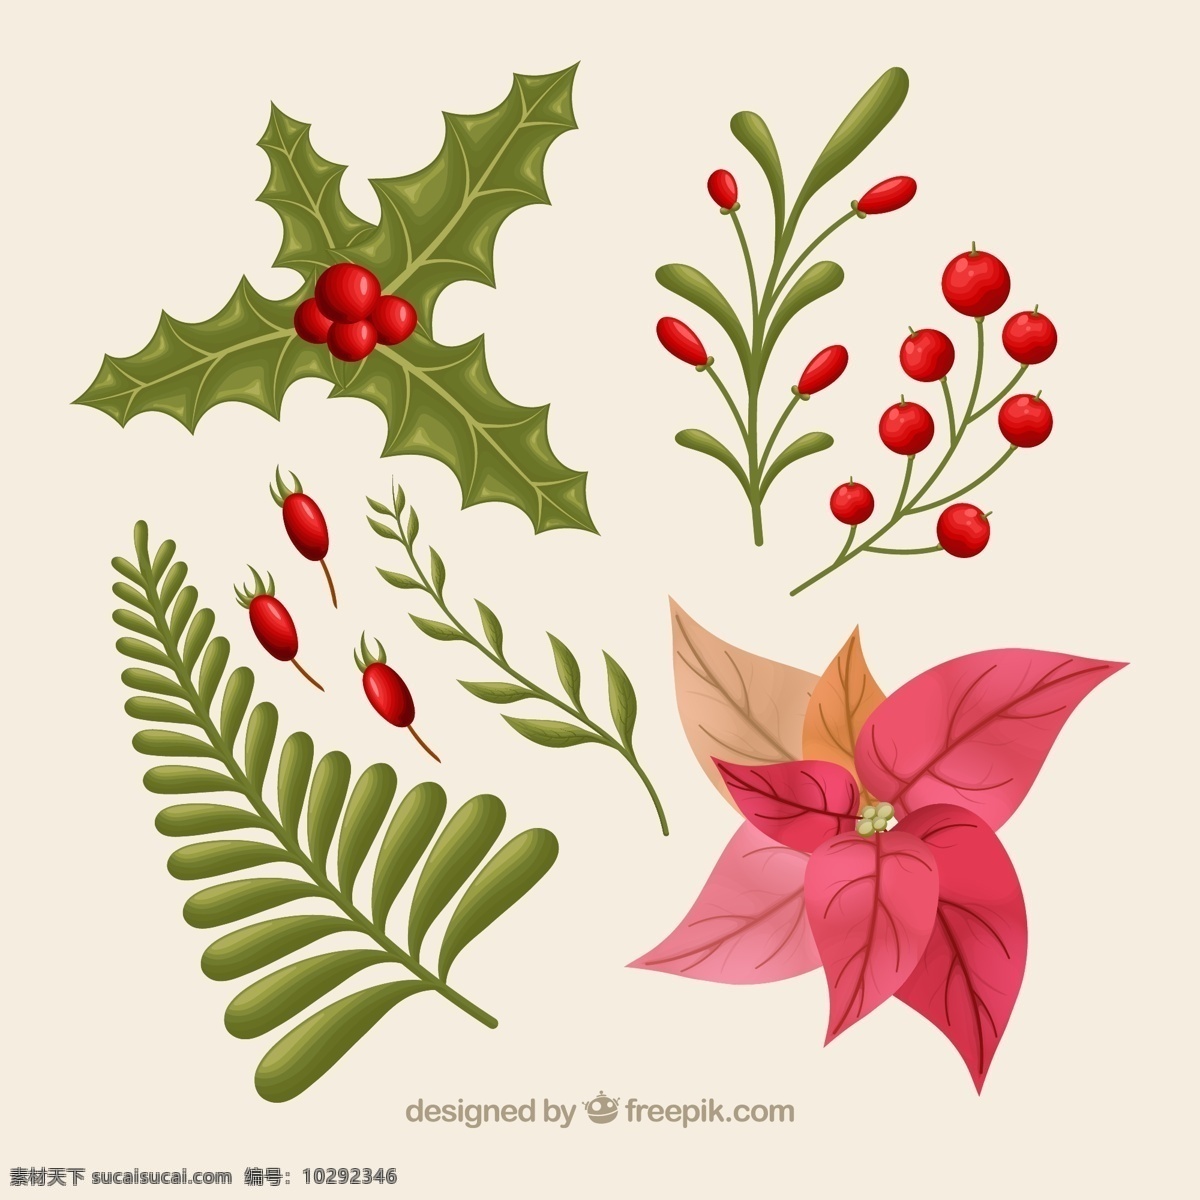 款 彩色 圣诞节 植物 枸骨 一品红 松枝 浆果 冬青 文化艺术 节日庆祝